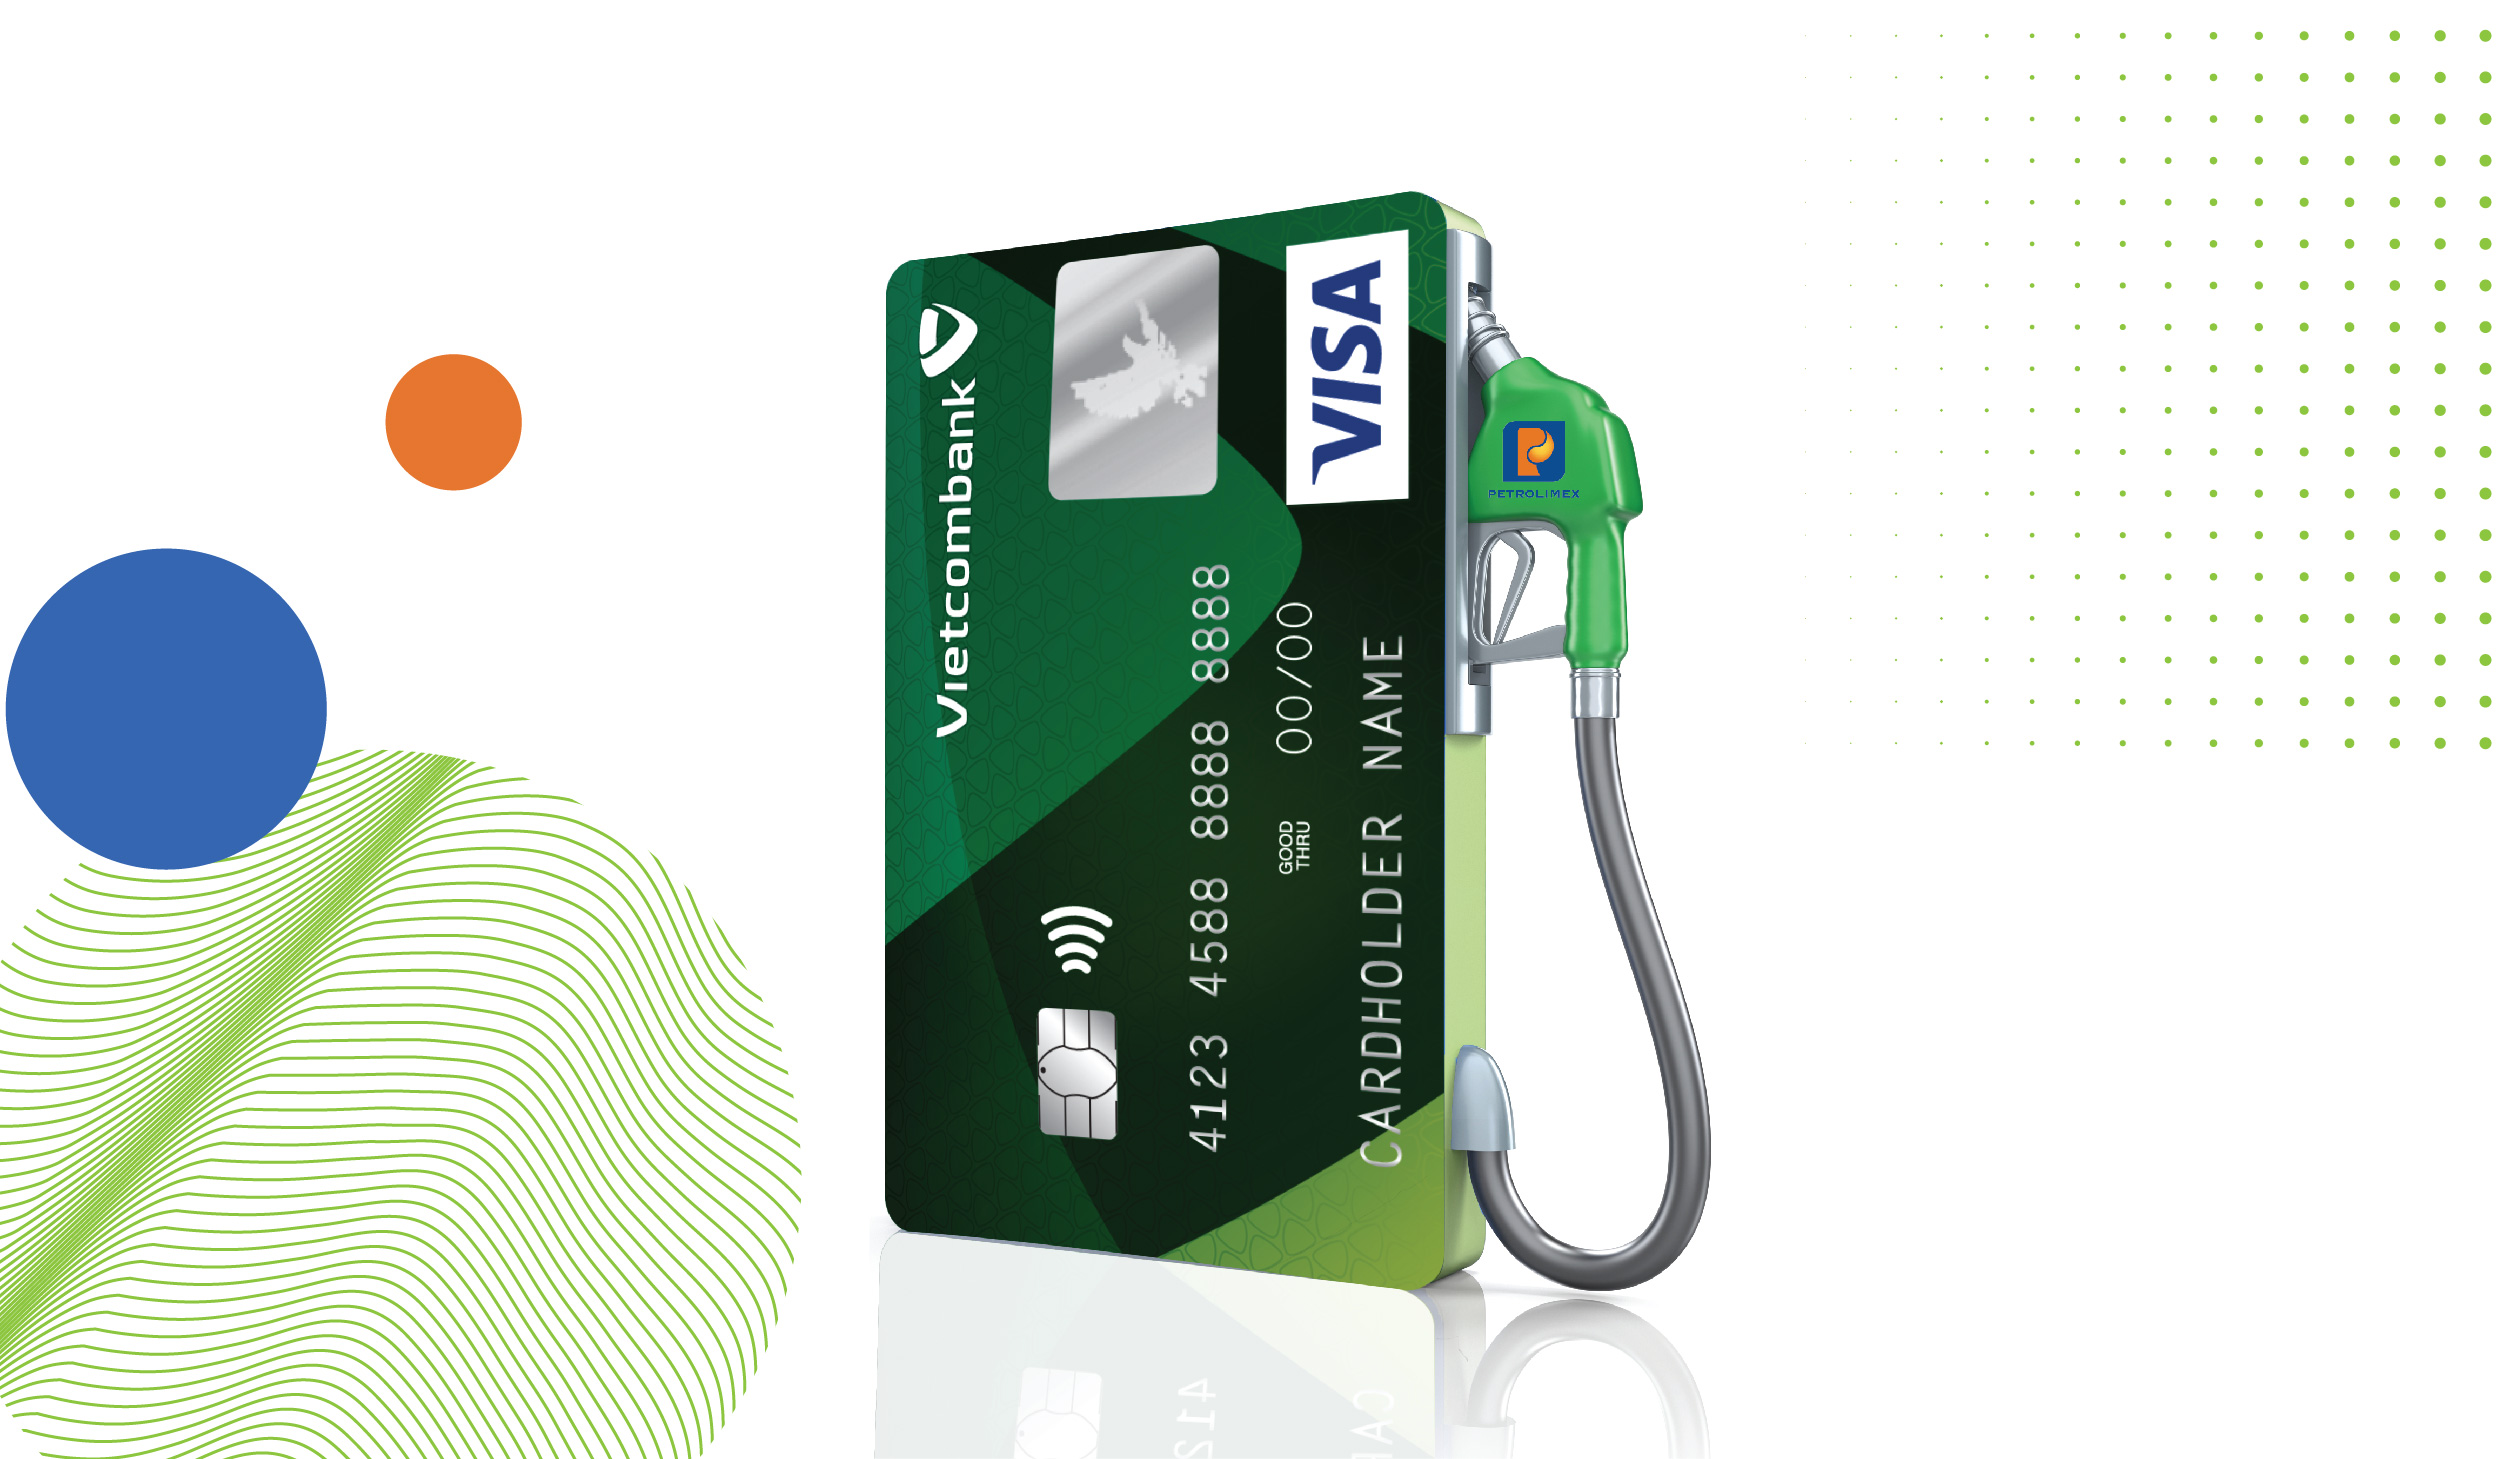 “Chạm thẻ mua xăng, tặng 100k tiền hoàn” với thẻ Vietcombank Visa tại cửa hàng xăng dầu Petrolimex